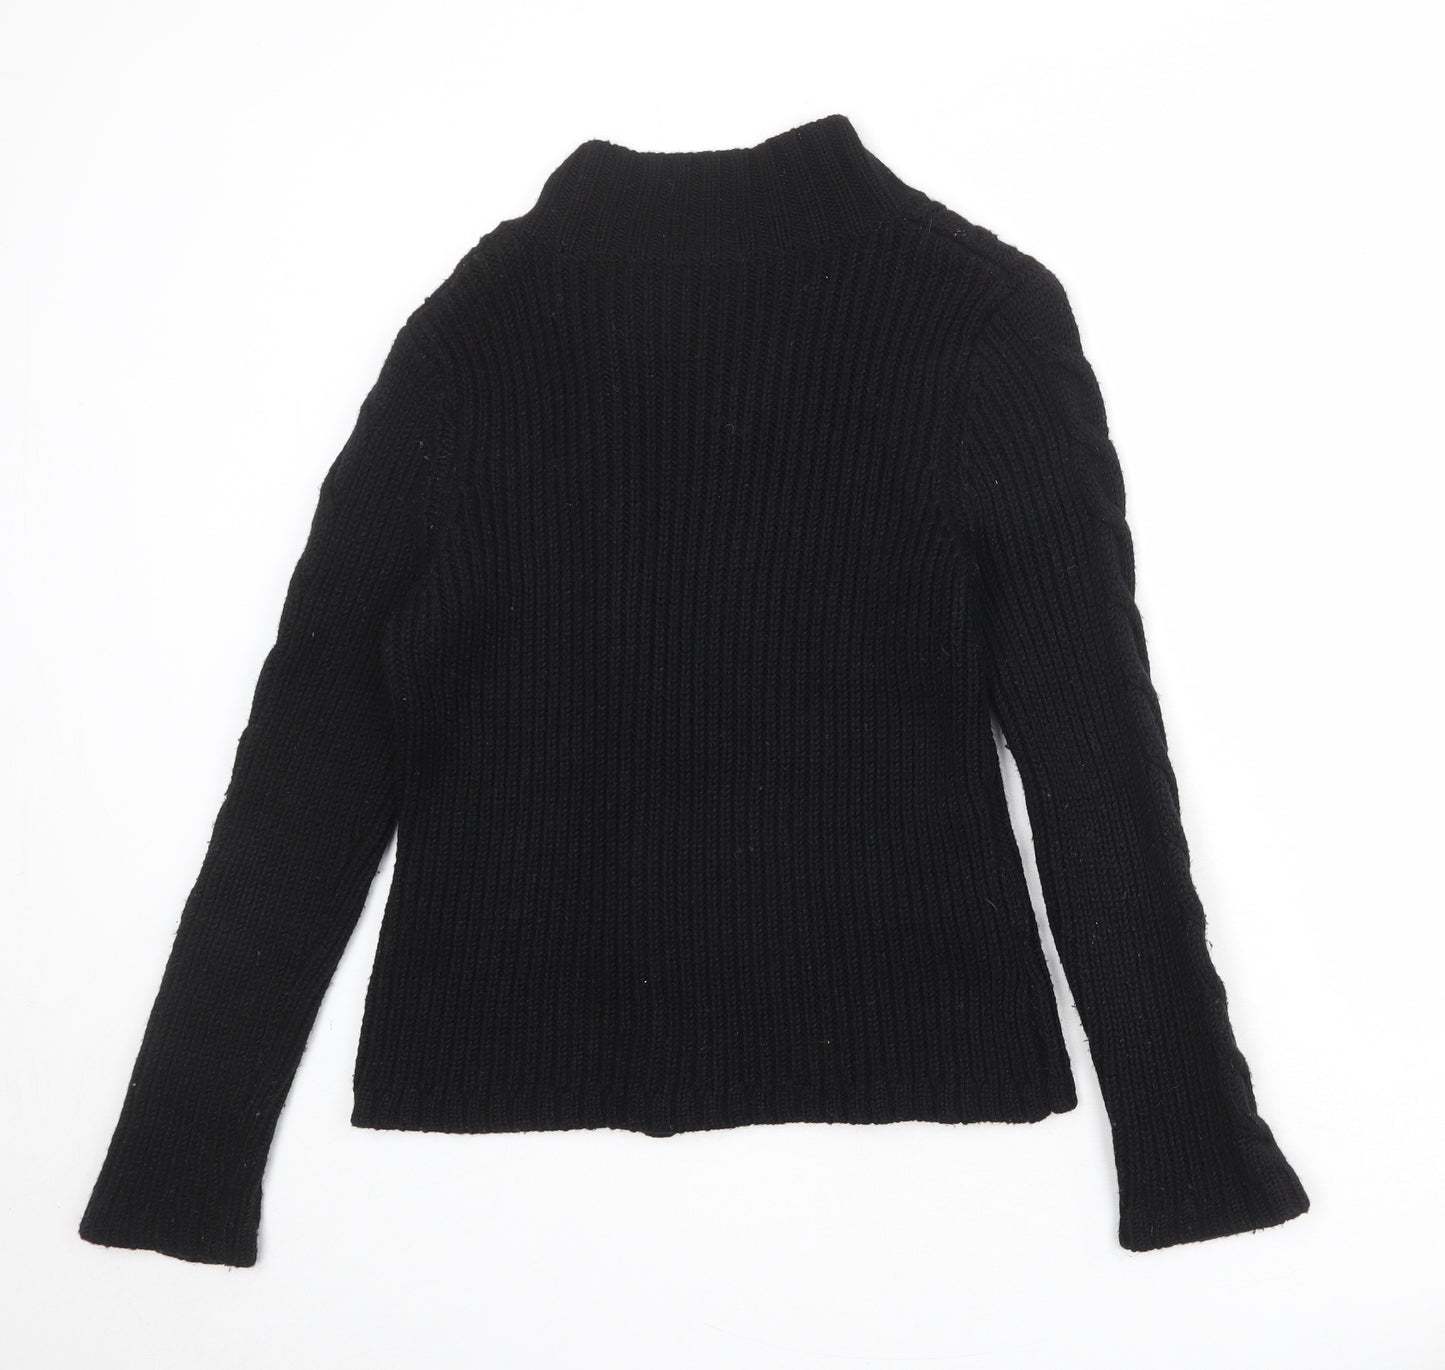 Laura Ashley Womens Black High Neck Wool Cardigan Jumper Size 12